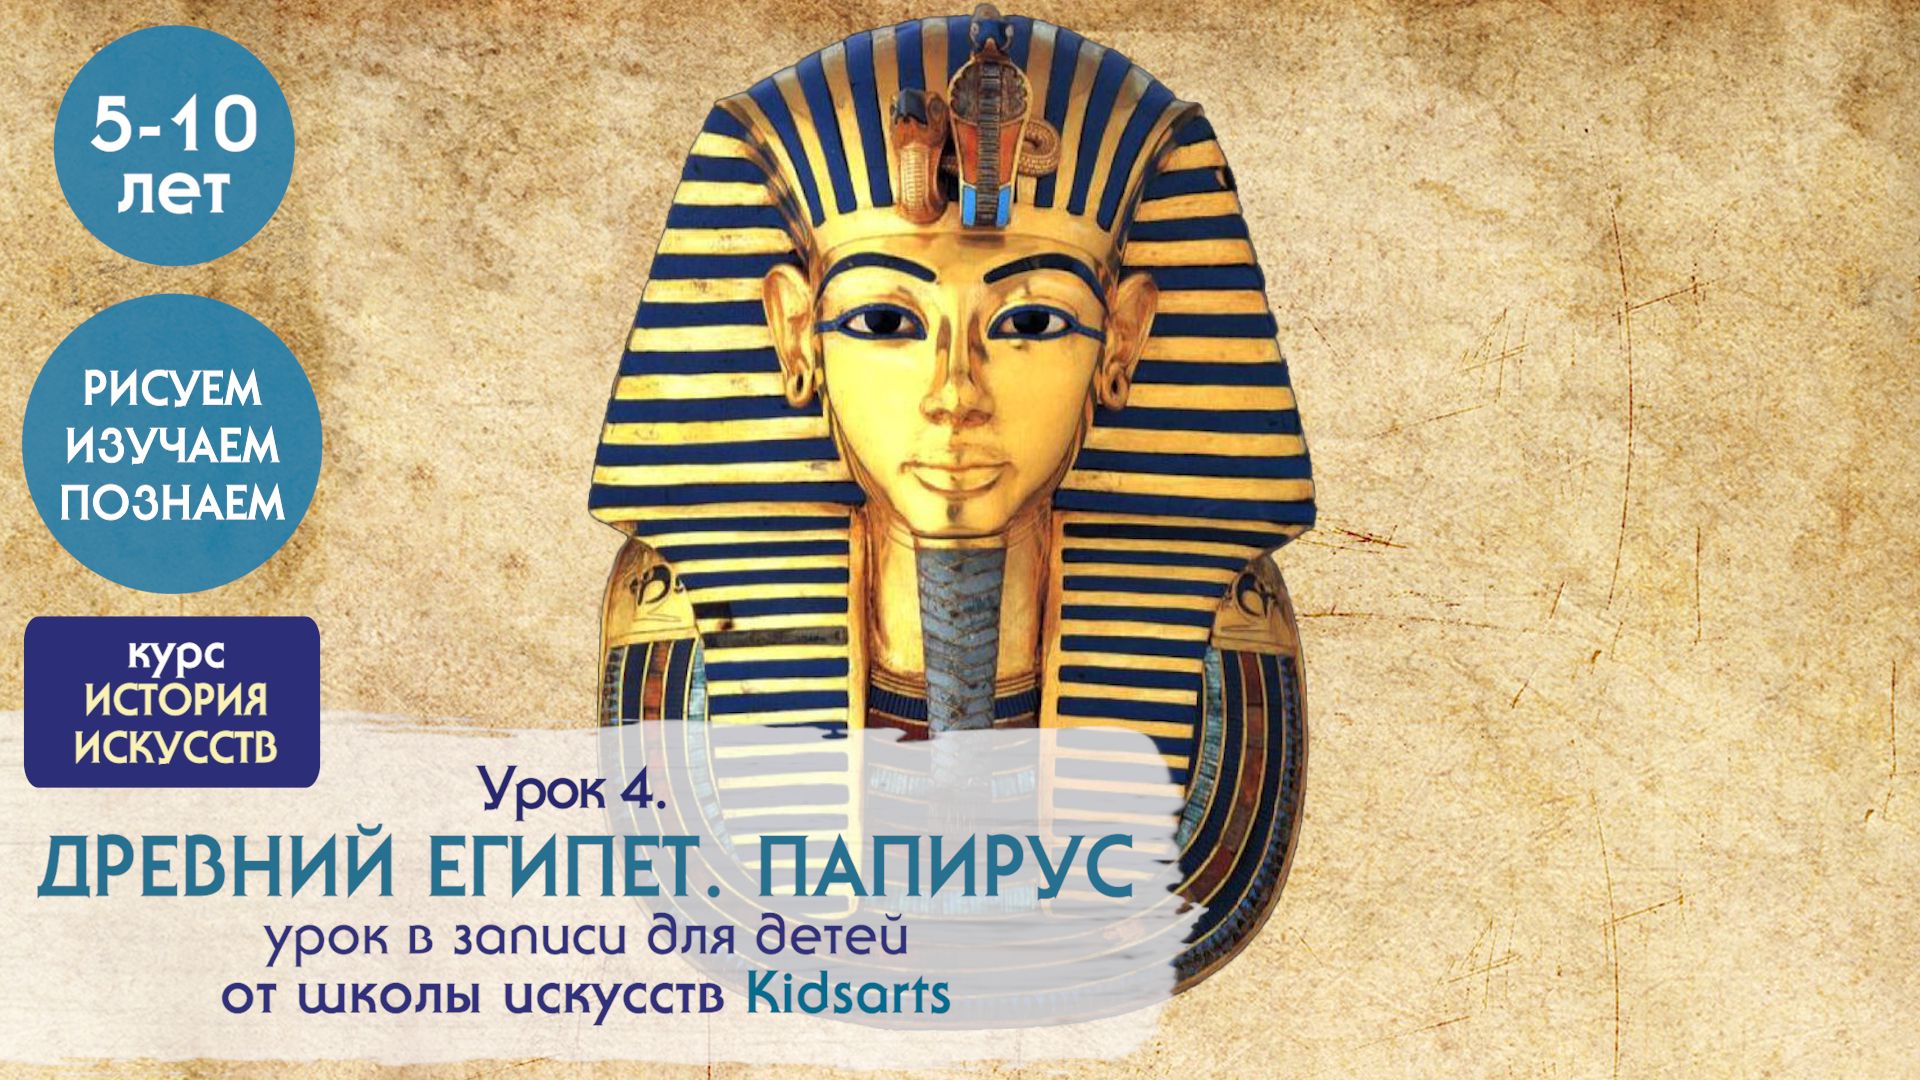 Урок №4 по ЖИВОПИСИ для детей 5-10 лет.  Древние цивилизации. Египет. Папирус